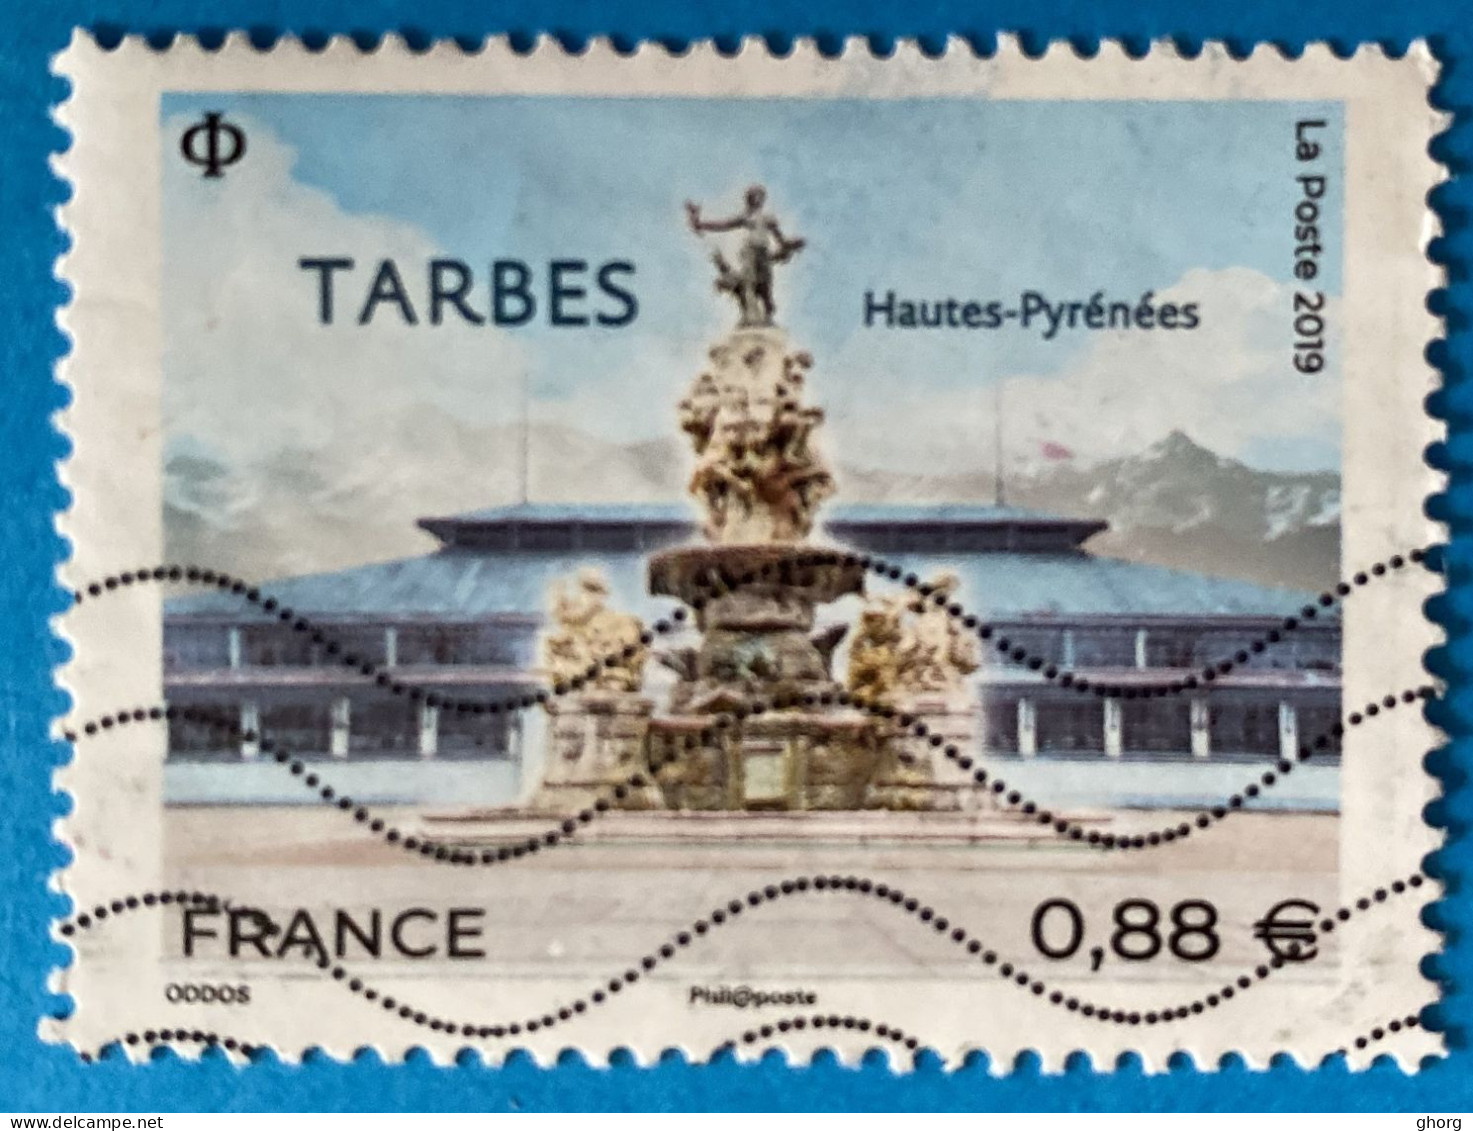 France 2019 : Tarbes N° 5335 Oblitéré - Used Stamps